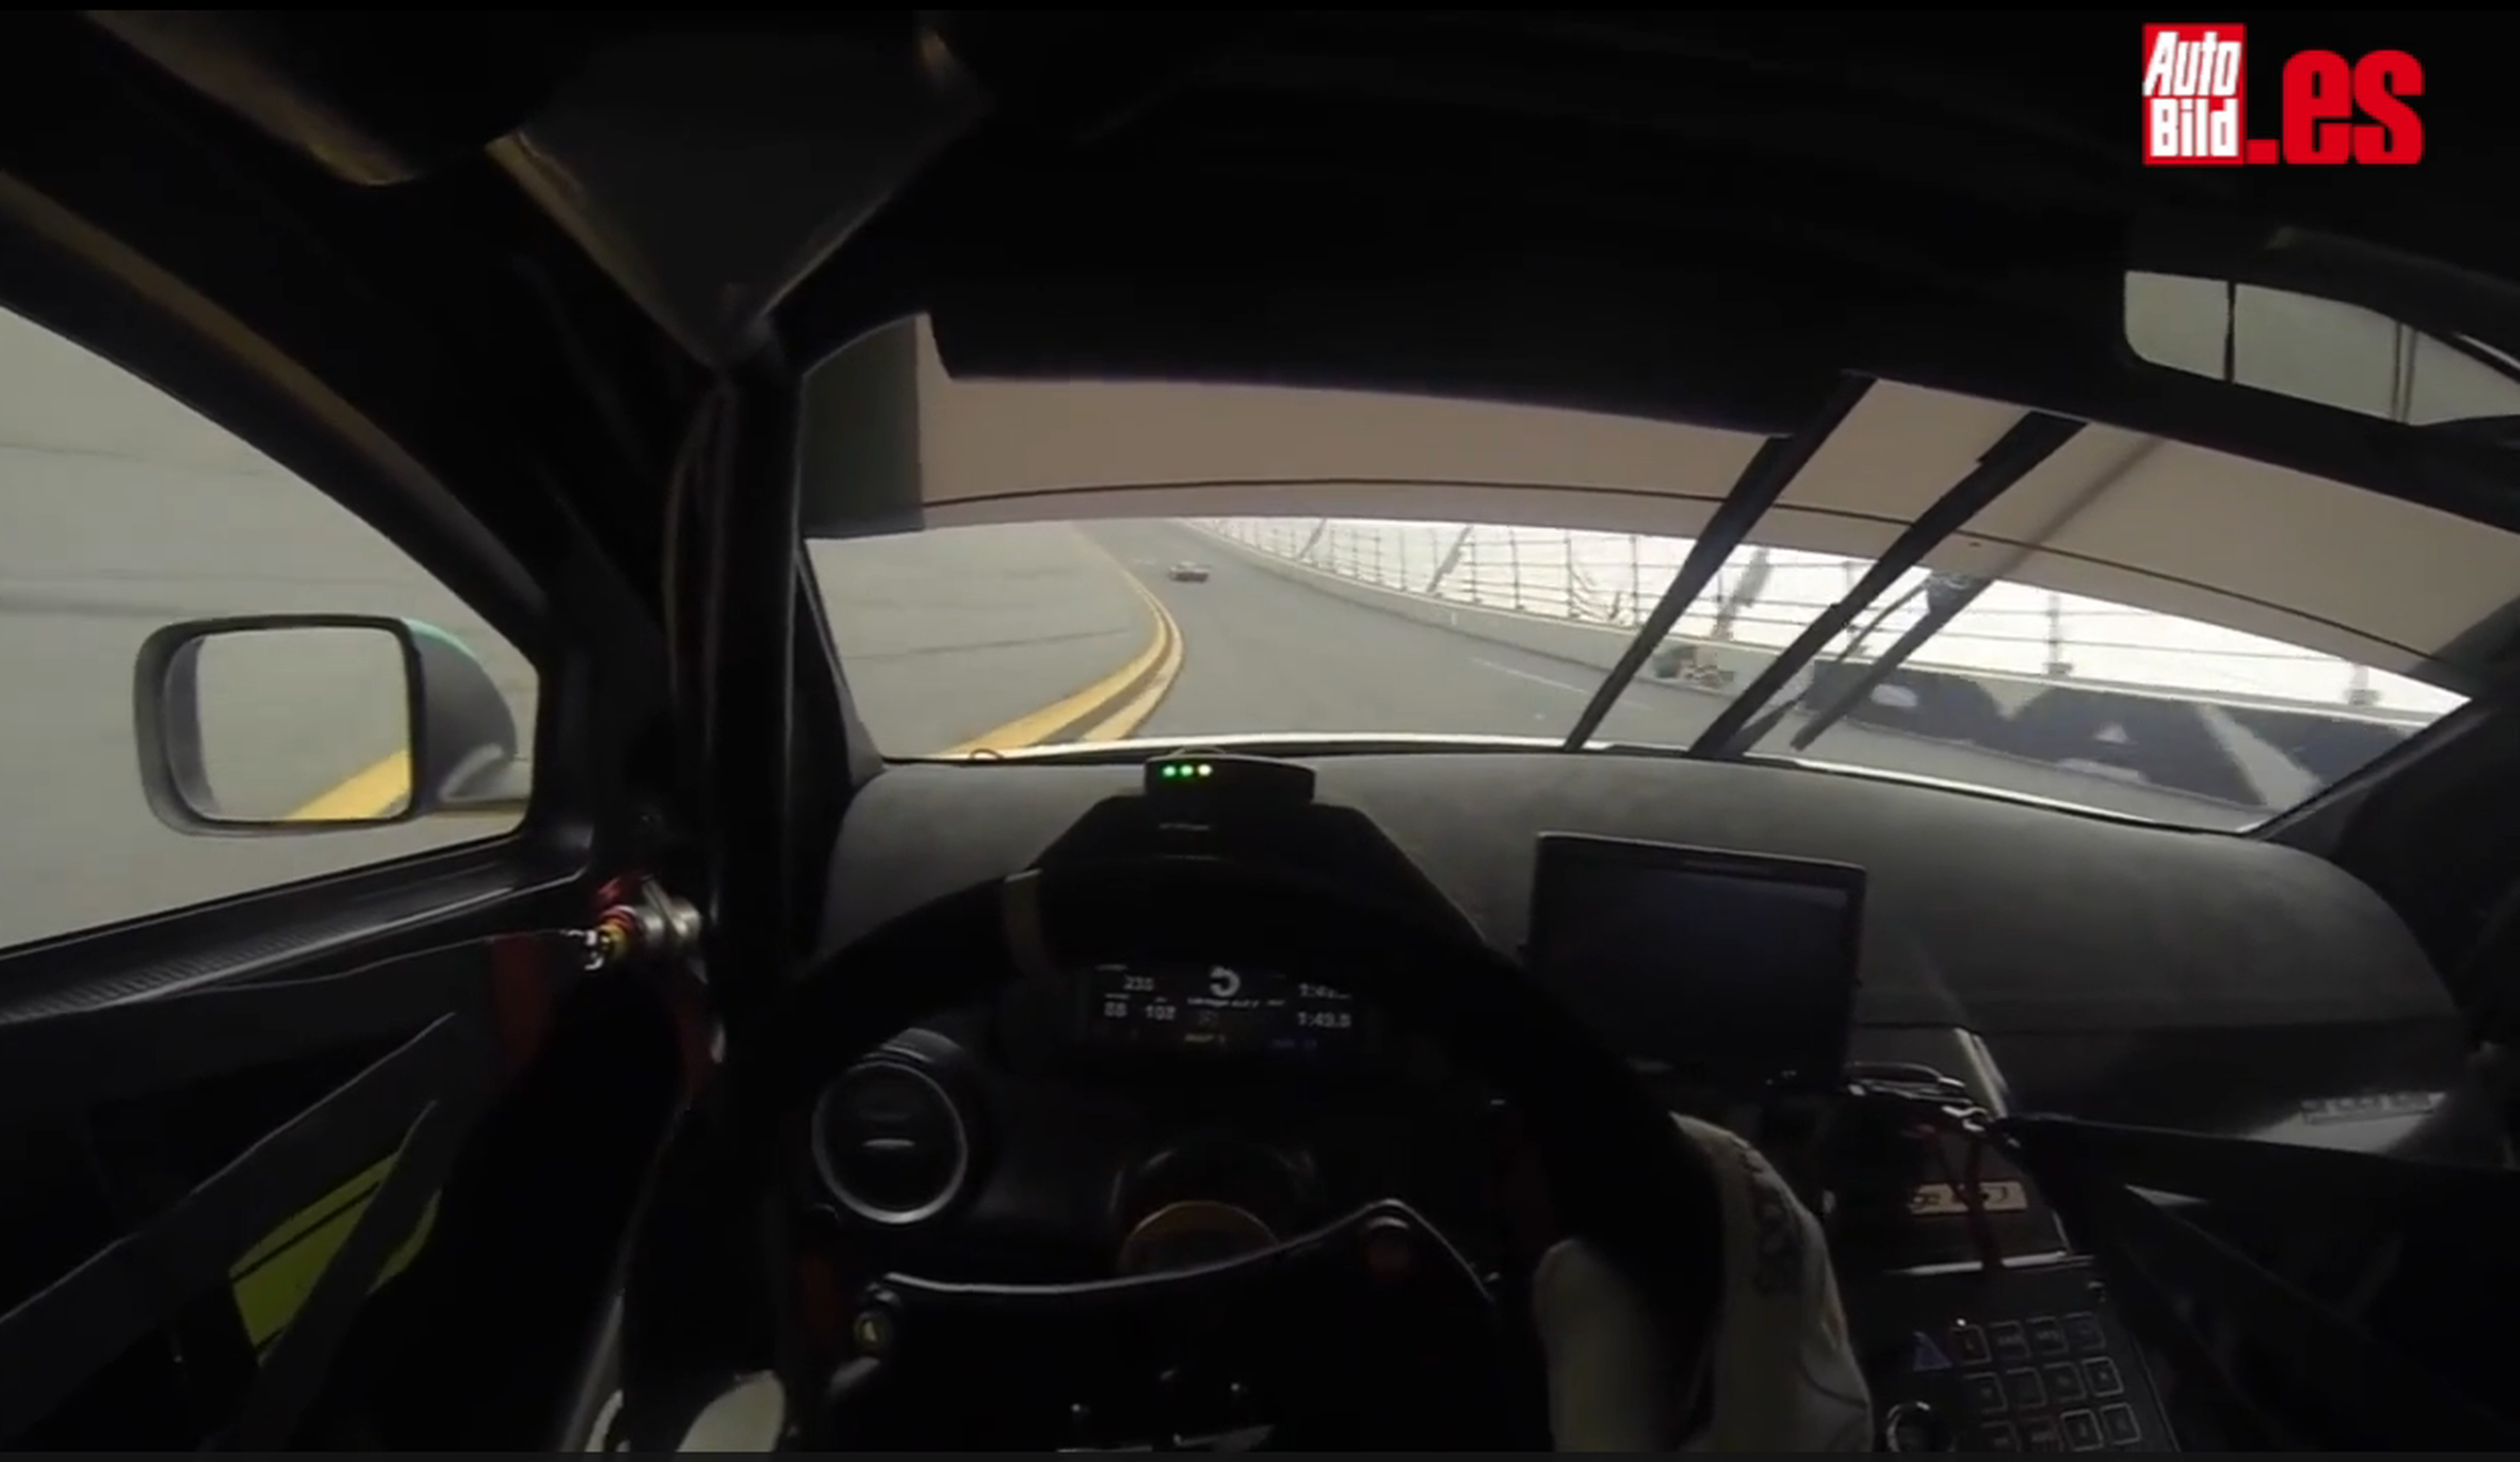 Vuelta onboard en un Aston Martin Vantage GT3 por Daytona